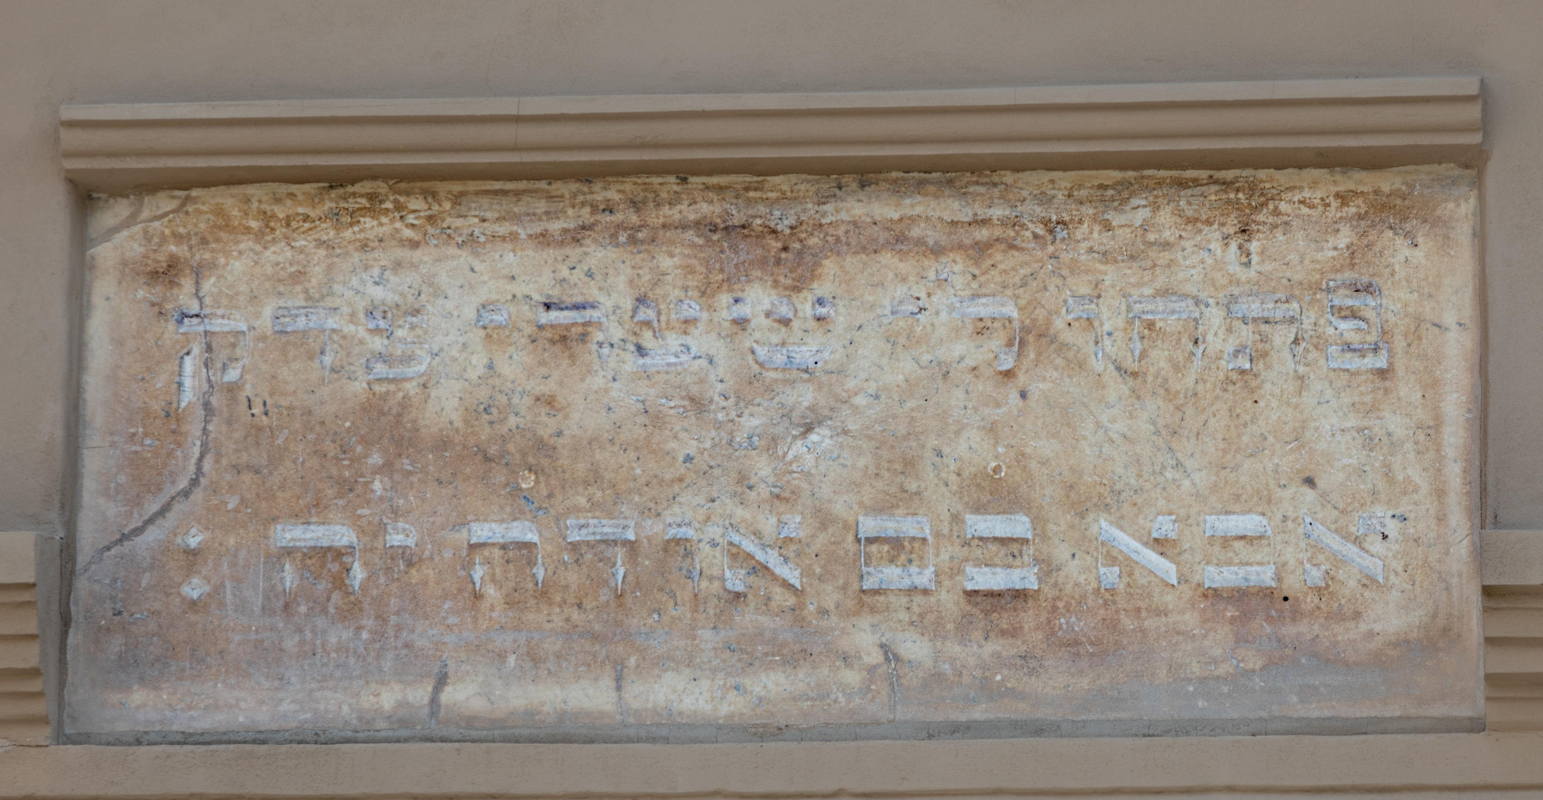 Inscription above door